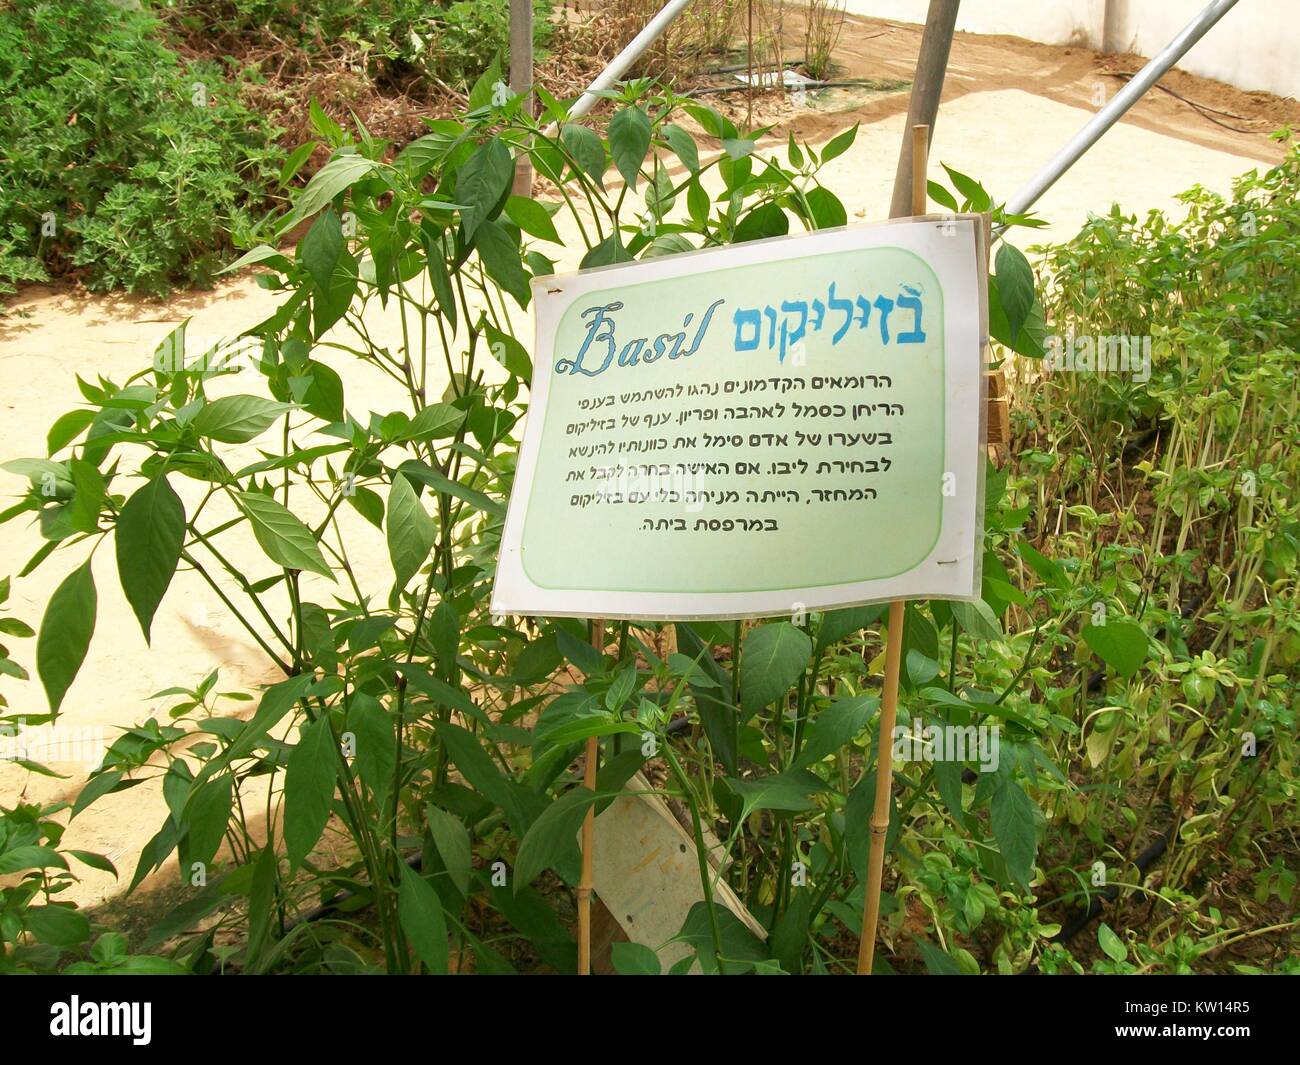 Le basilic cultivées en hydroponique, en utilisant l'eau recyclée, partiellement à Shvil Hasalat experimental farm dans le désert du Néguev, en Israël, en 2012. Banque D'Images